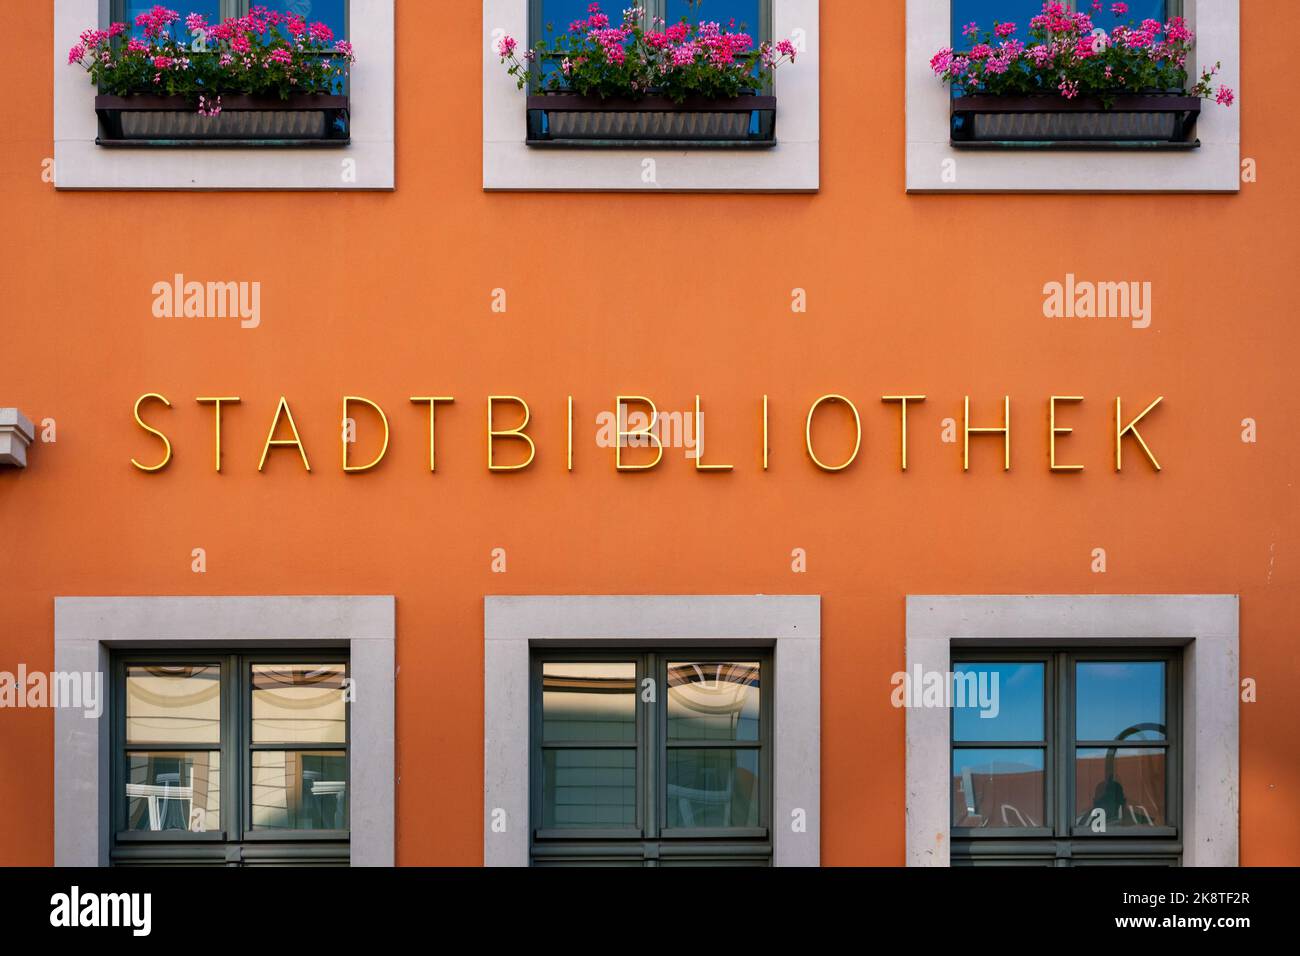 Beschriftung der Stadtbibliothek auf der Außenseite des Gebäudes. Goldene Buchstaben auf einer orangefarbenen Fassade. Ein Service zum Ausleihen von Büchern in einer Stadt. Stockfoto